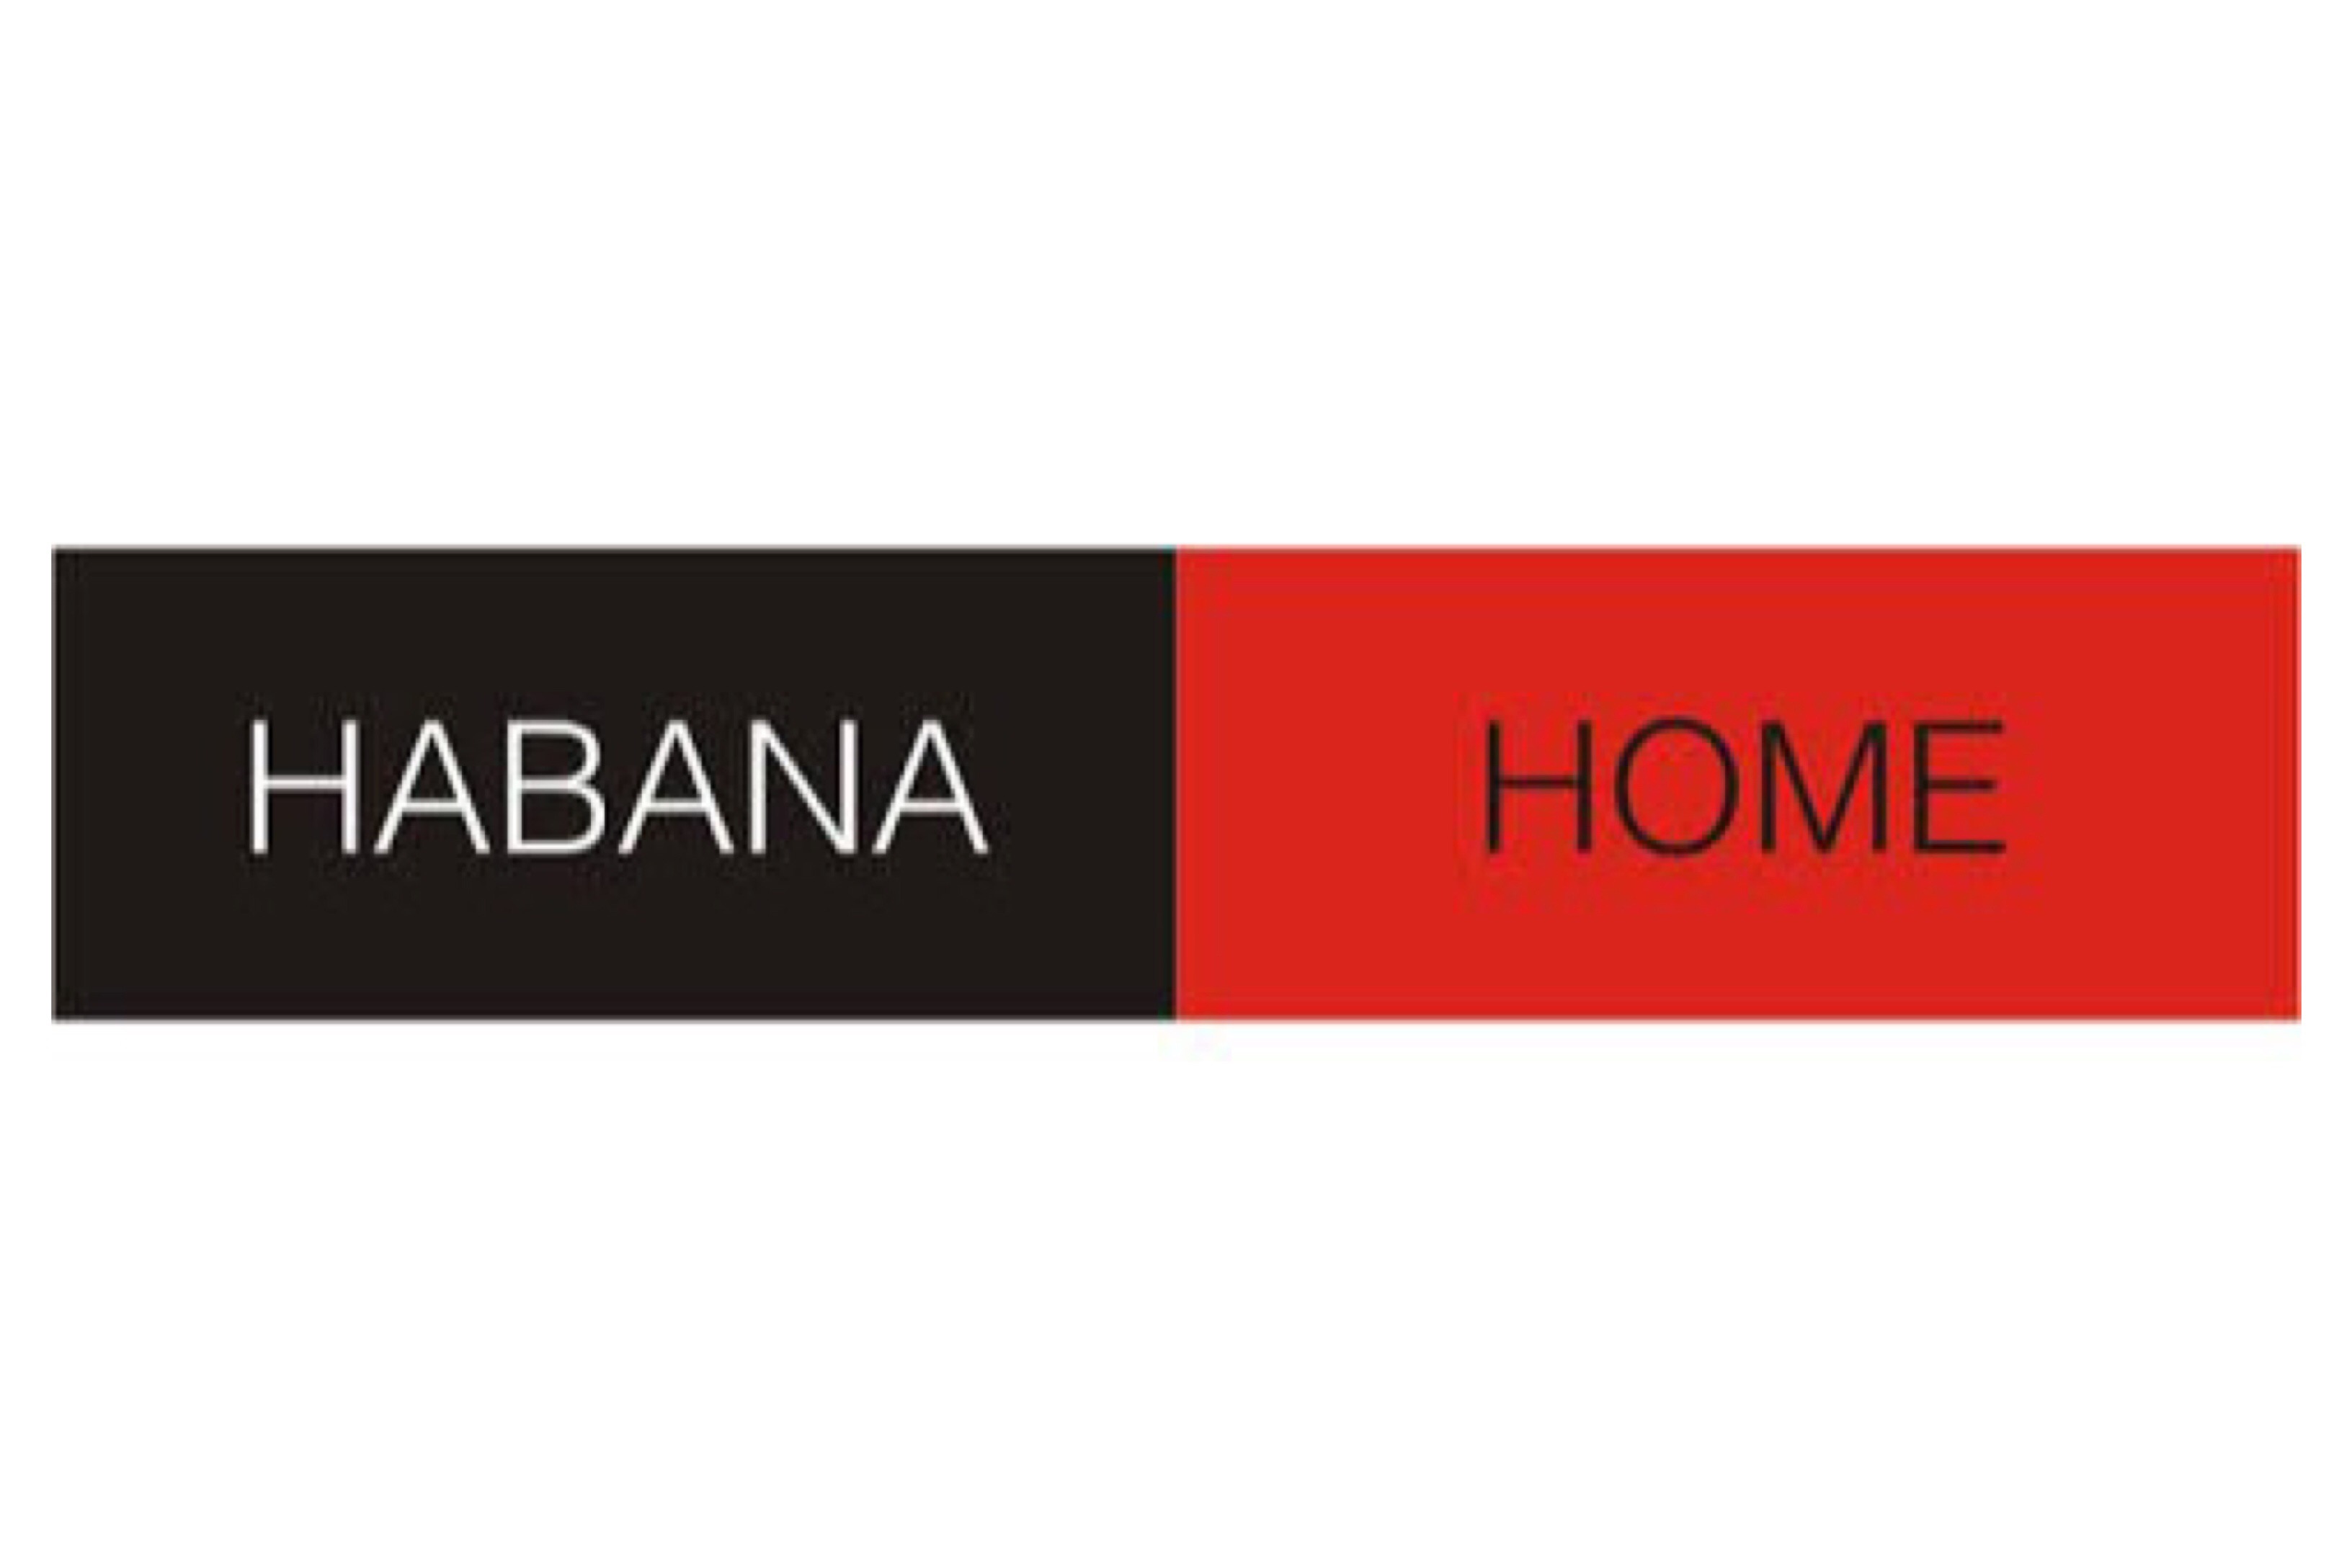 Habana Home